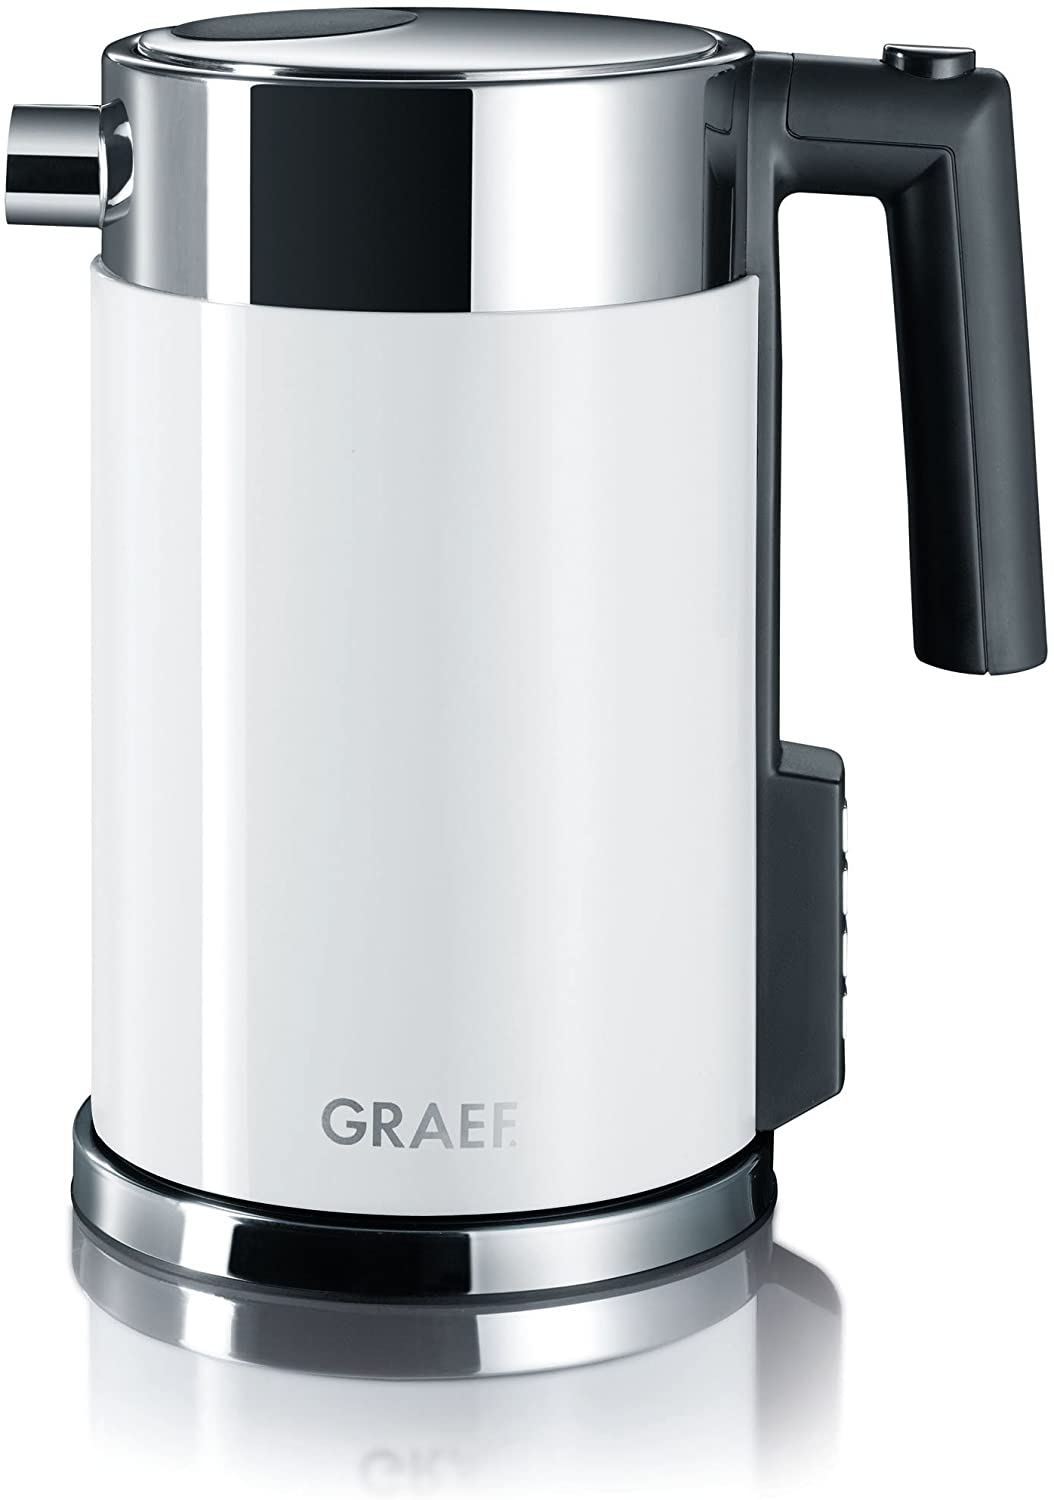 GRAEF WK 701 water heater white